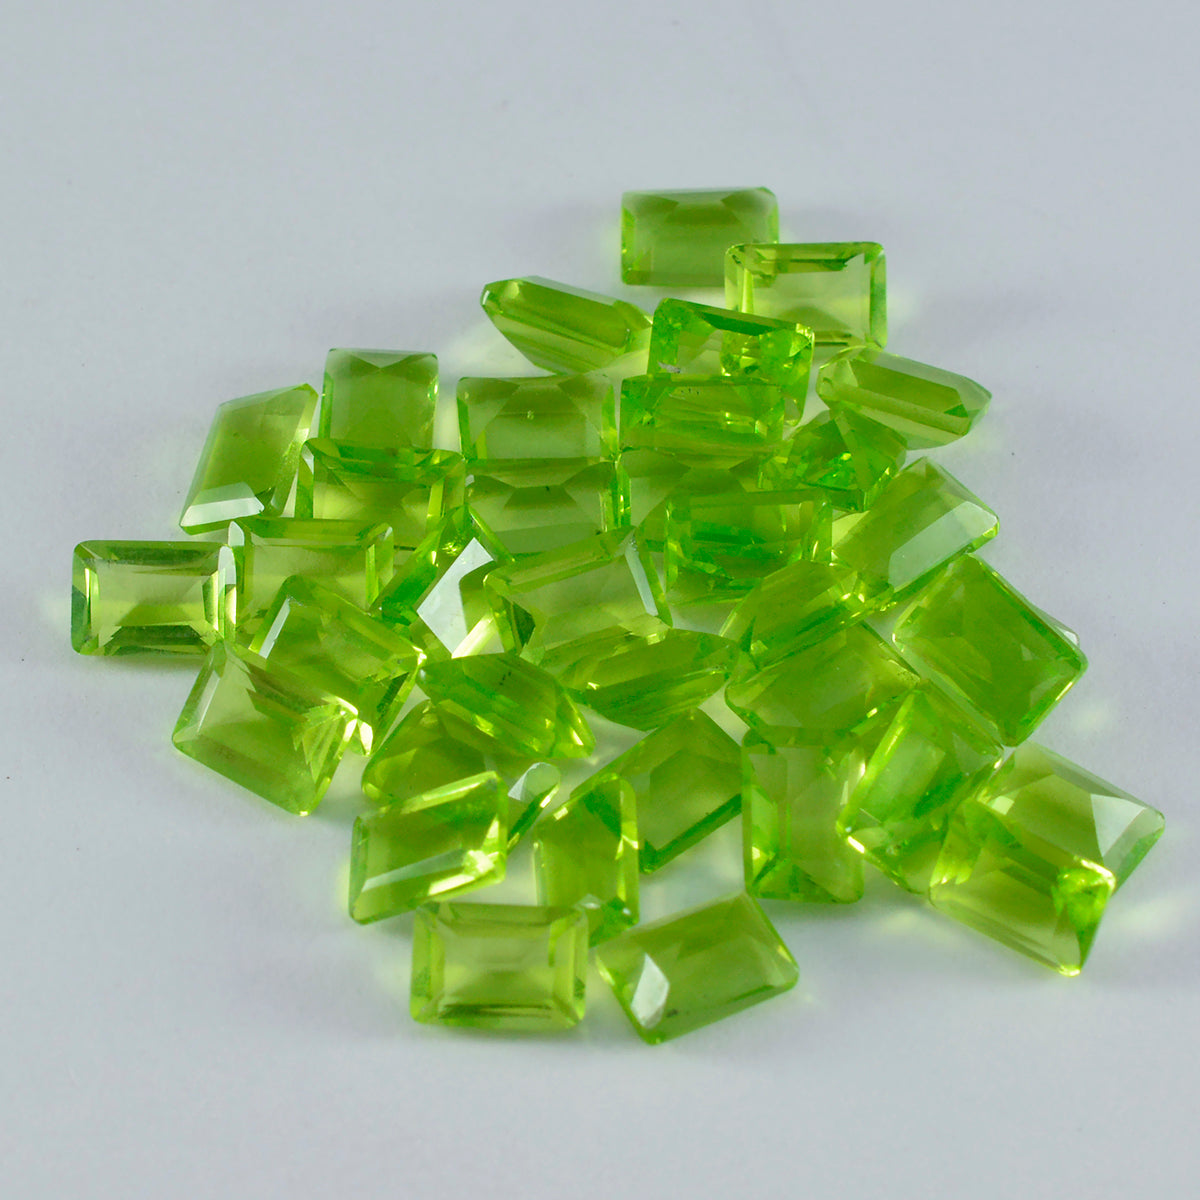 riyogems 1 шт. зеленый перидот cz граненый 3x5 мм восьмиугольной формы красивый качественный свободный драгоценный камень